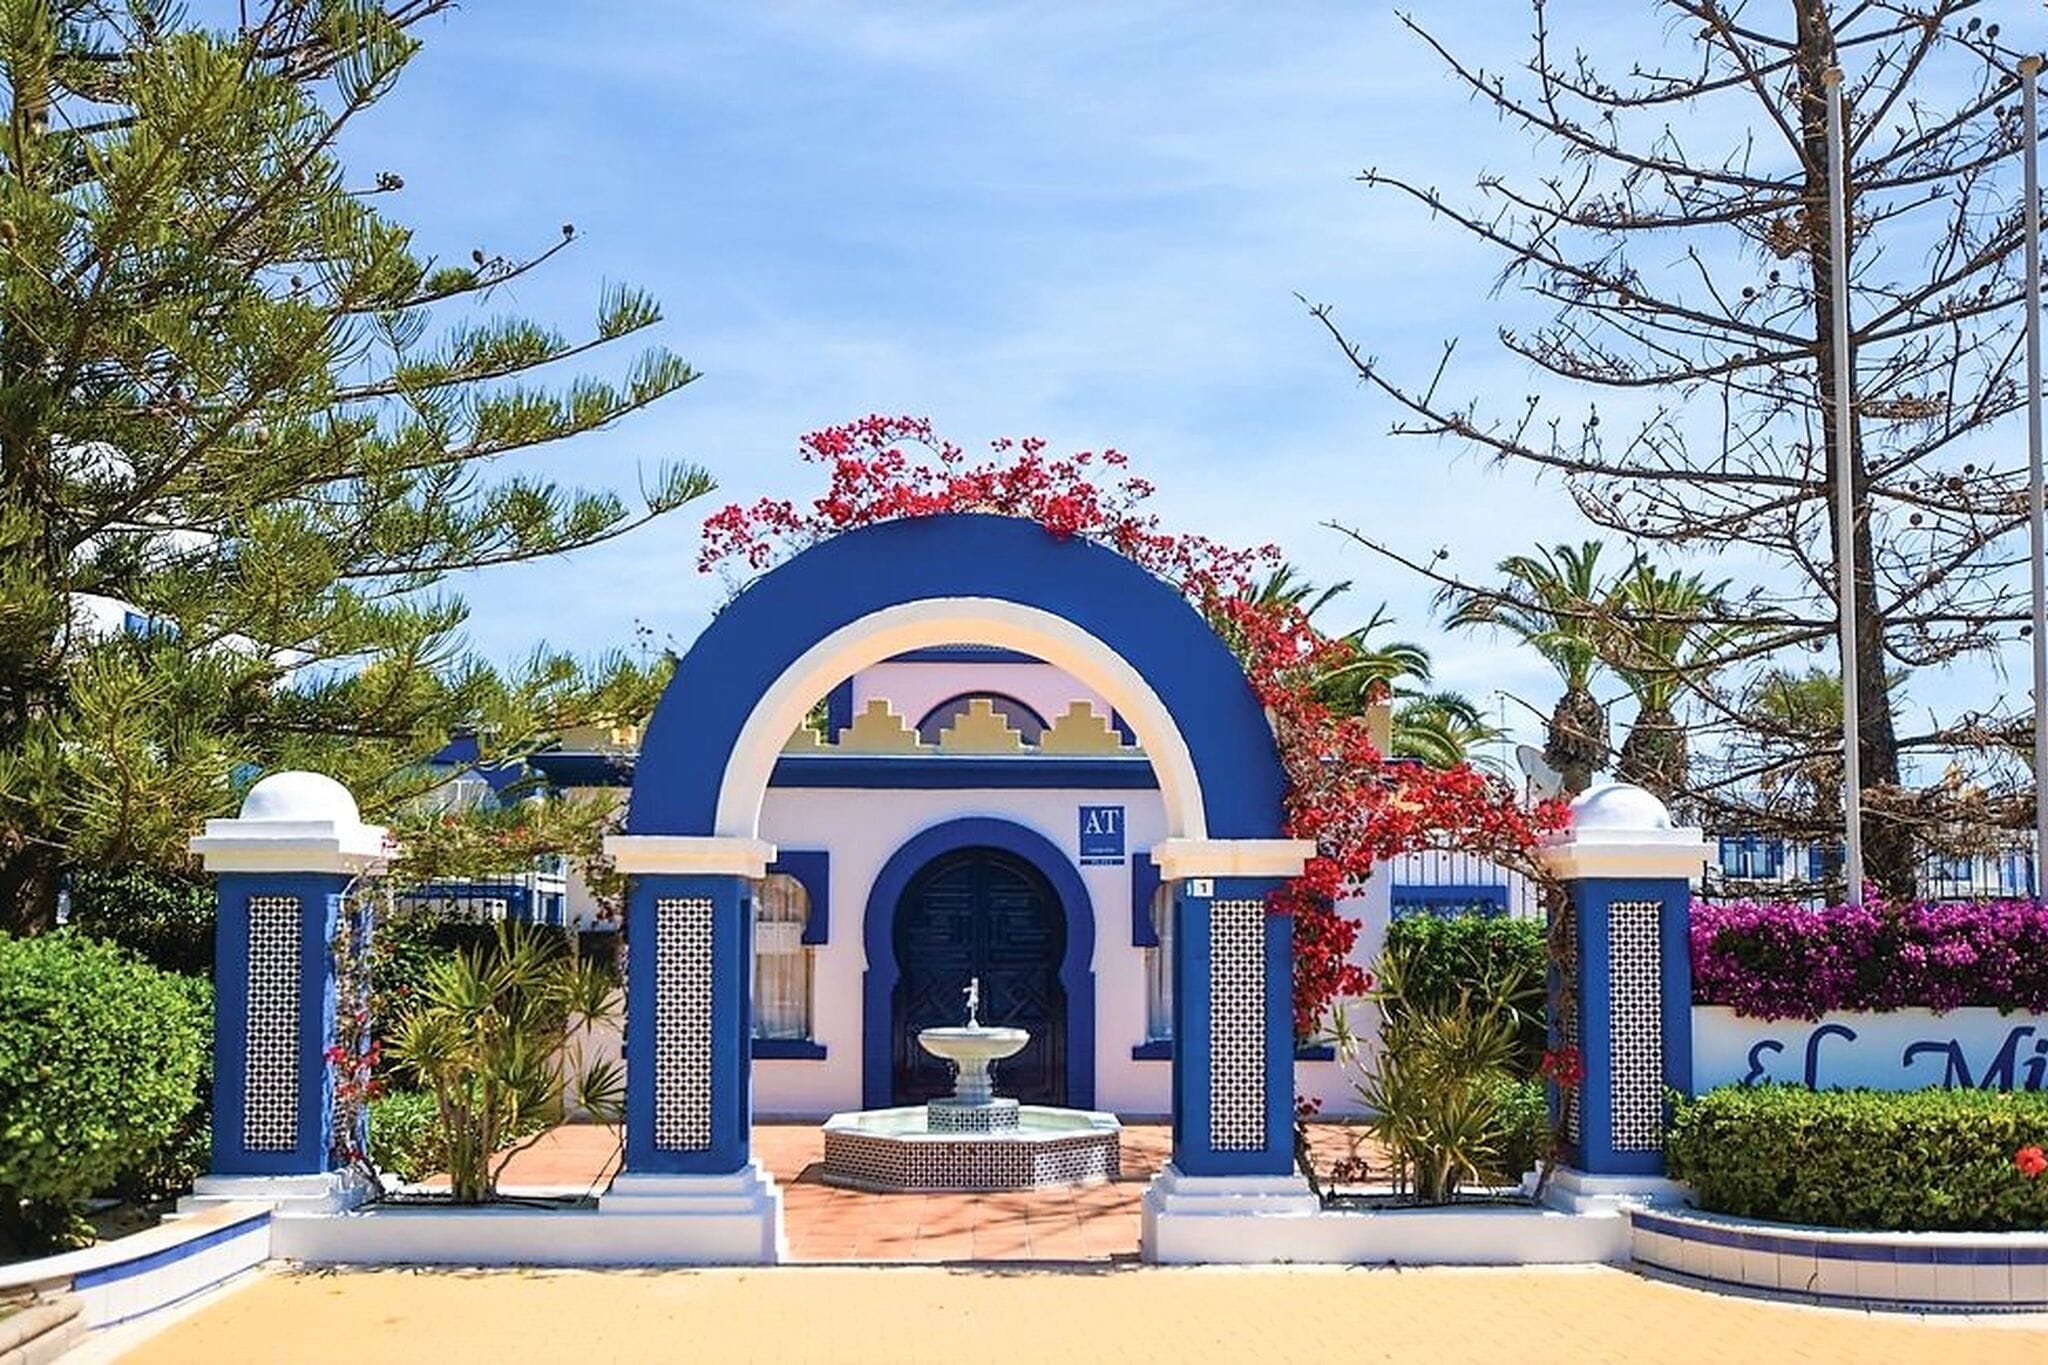 Maison de vacances pittoresque à Roquetas de Mar avec piscine partagée